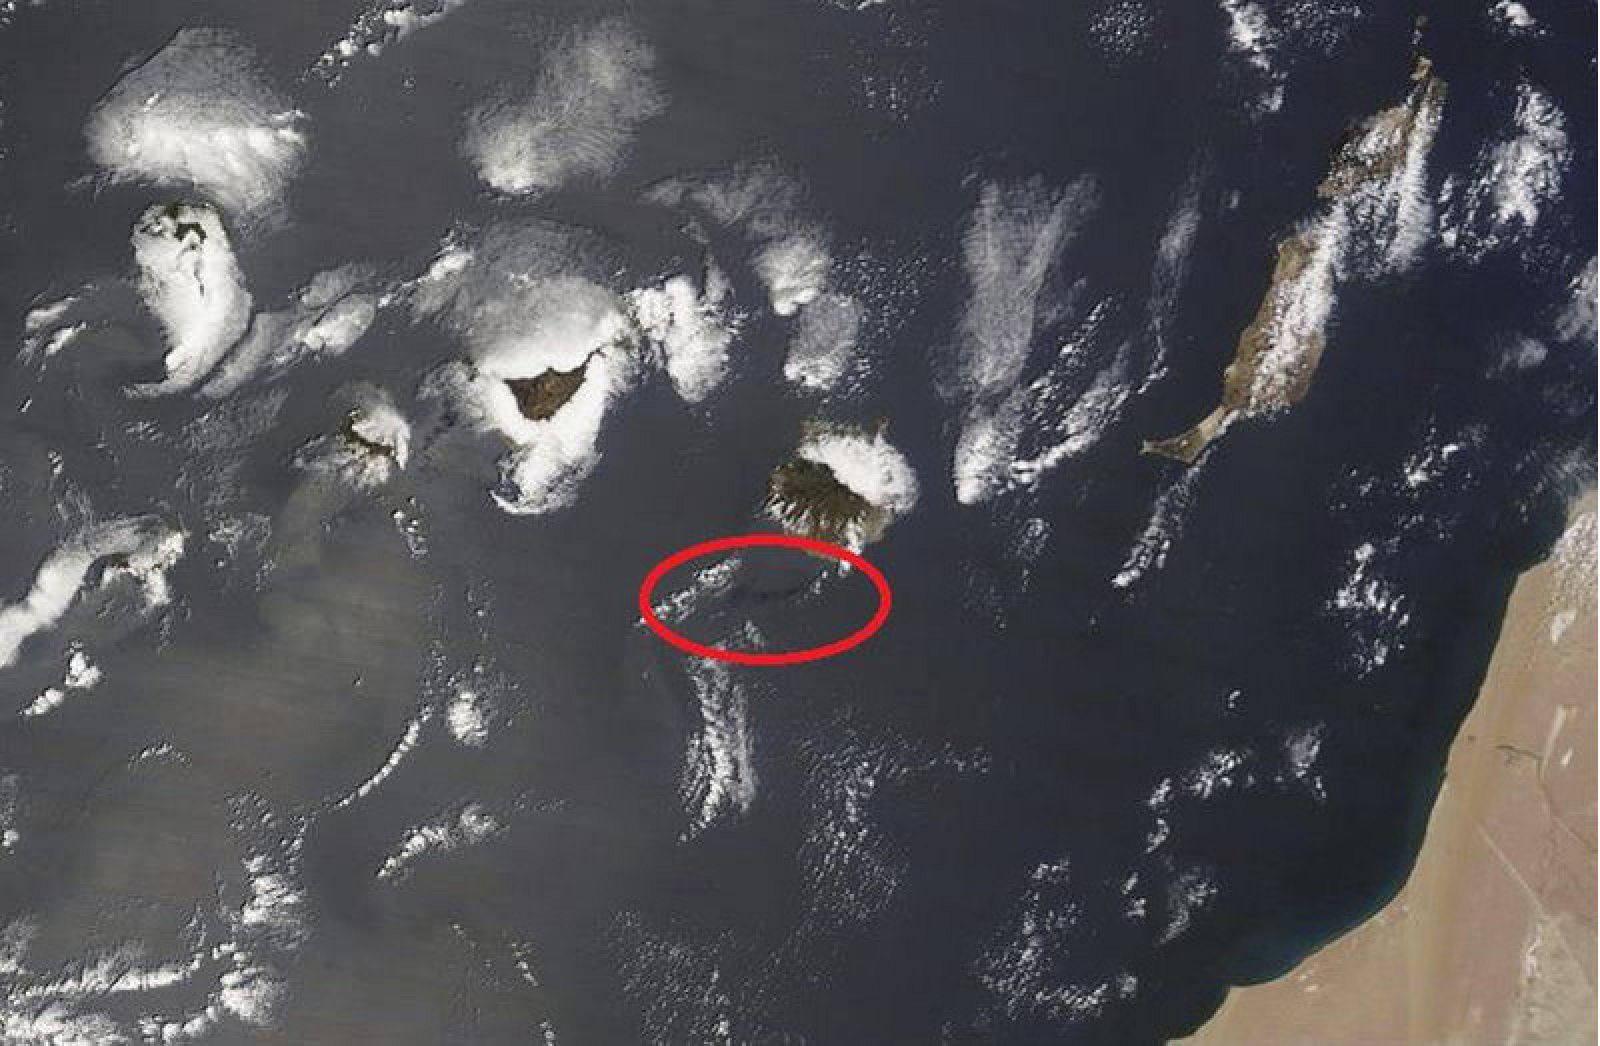 La mancha de fuel al sur de Gran Canaria señalada en rojo captada por el satélite Terra de la NASA.